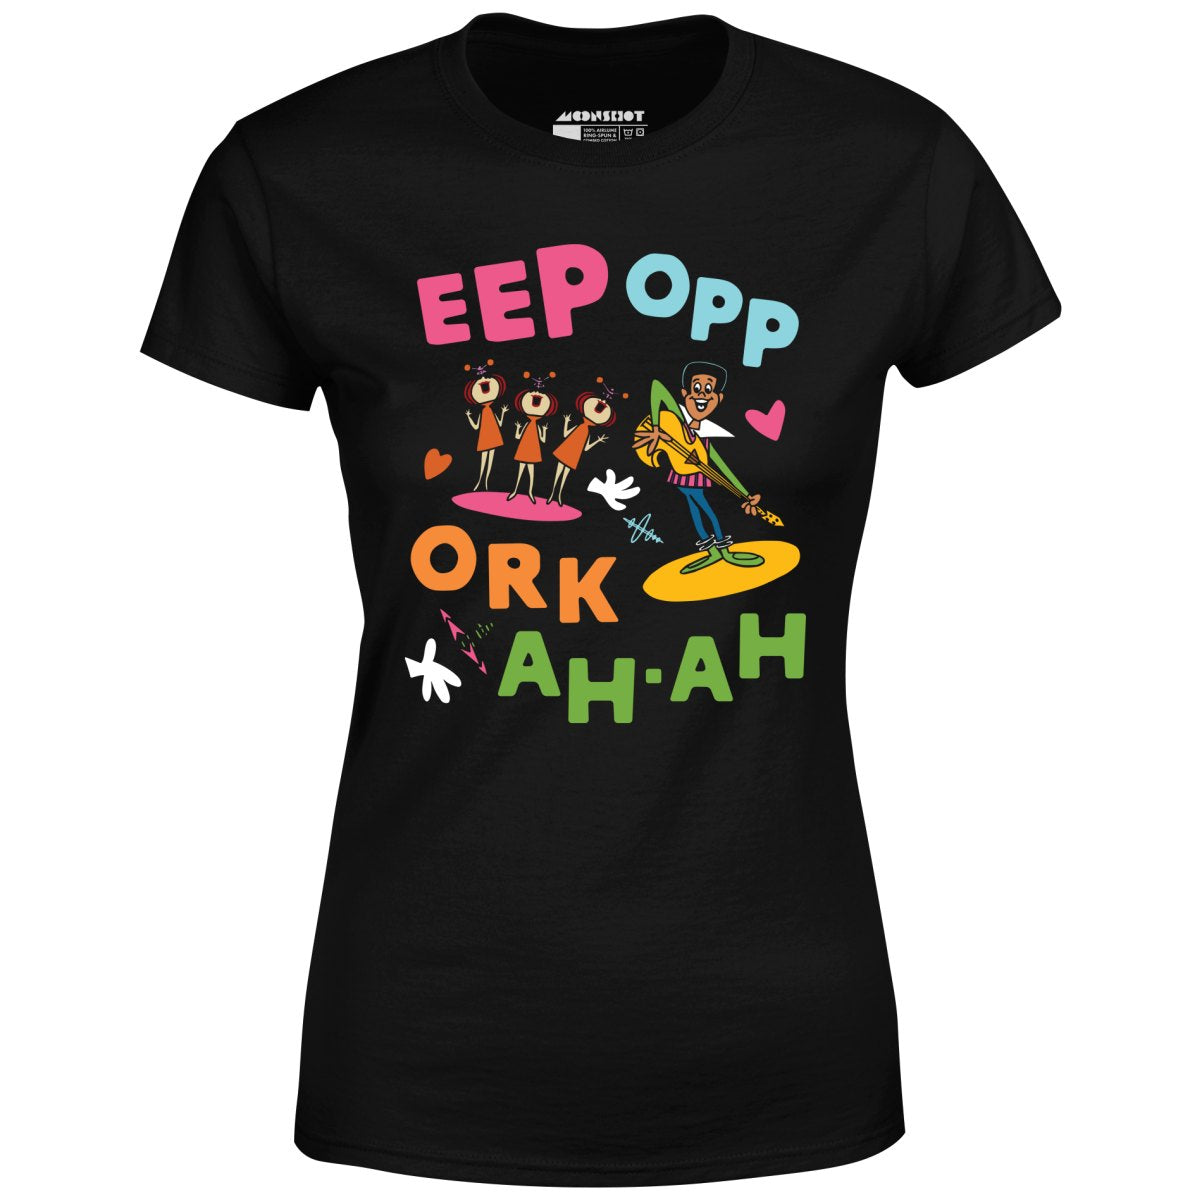 Eep Opp Ork Ah Ah - Women's T-Shirt